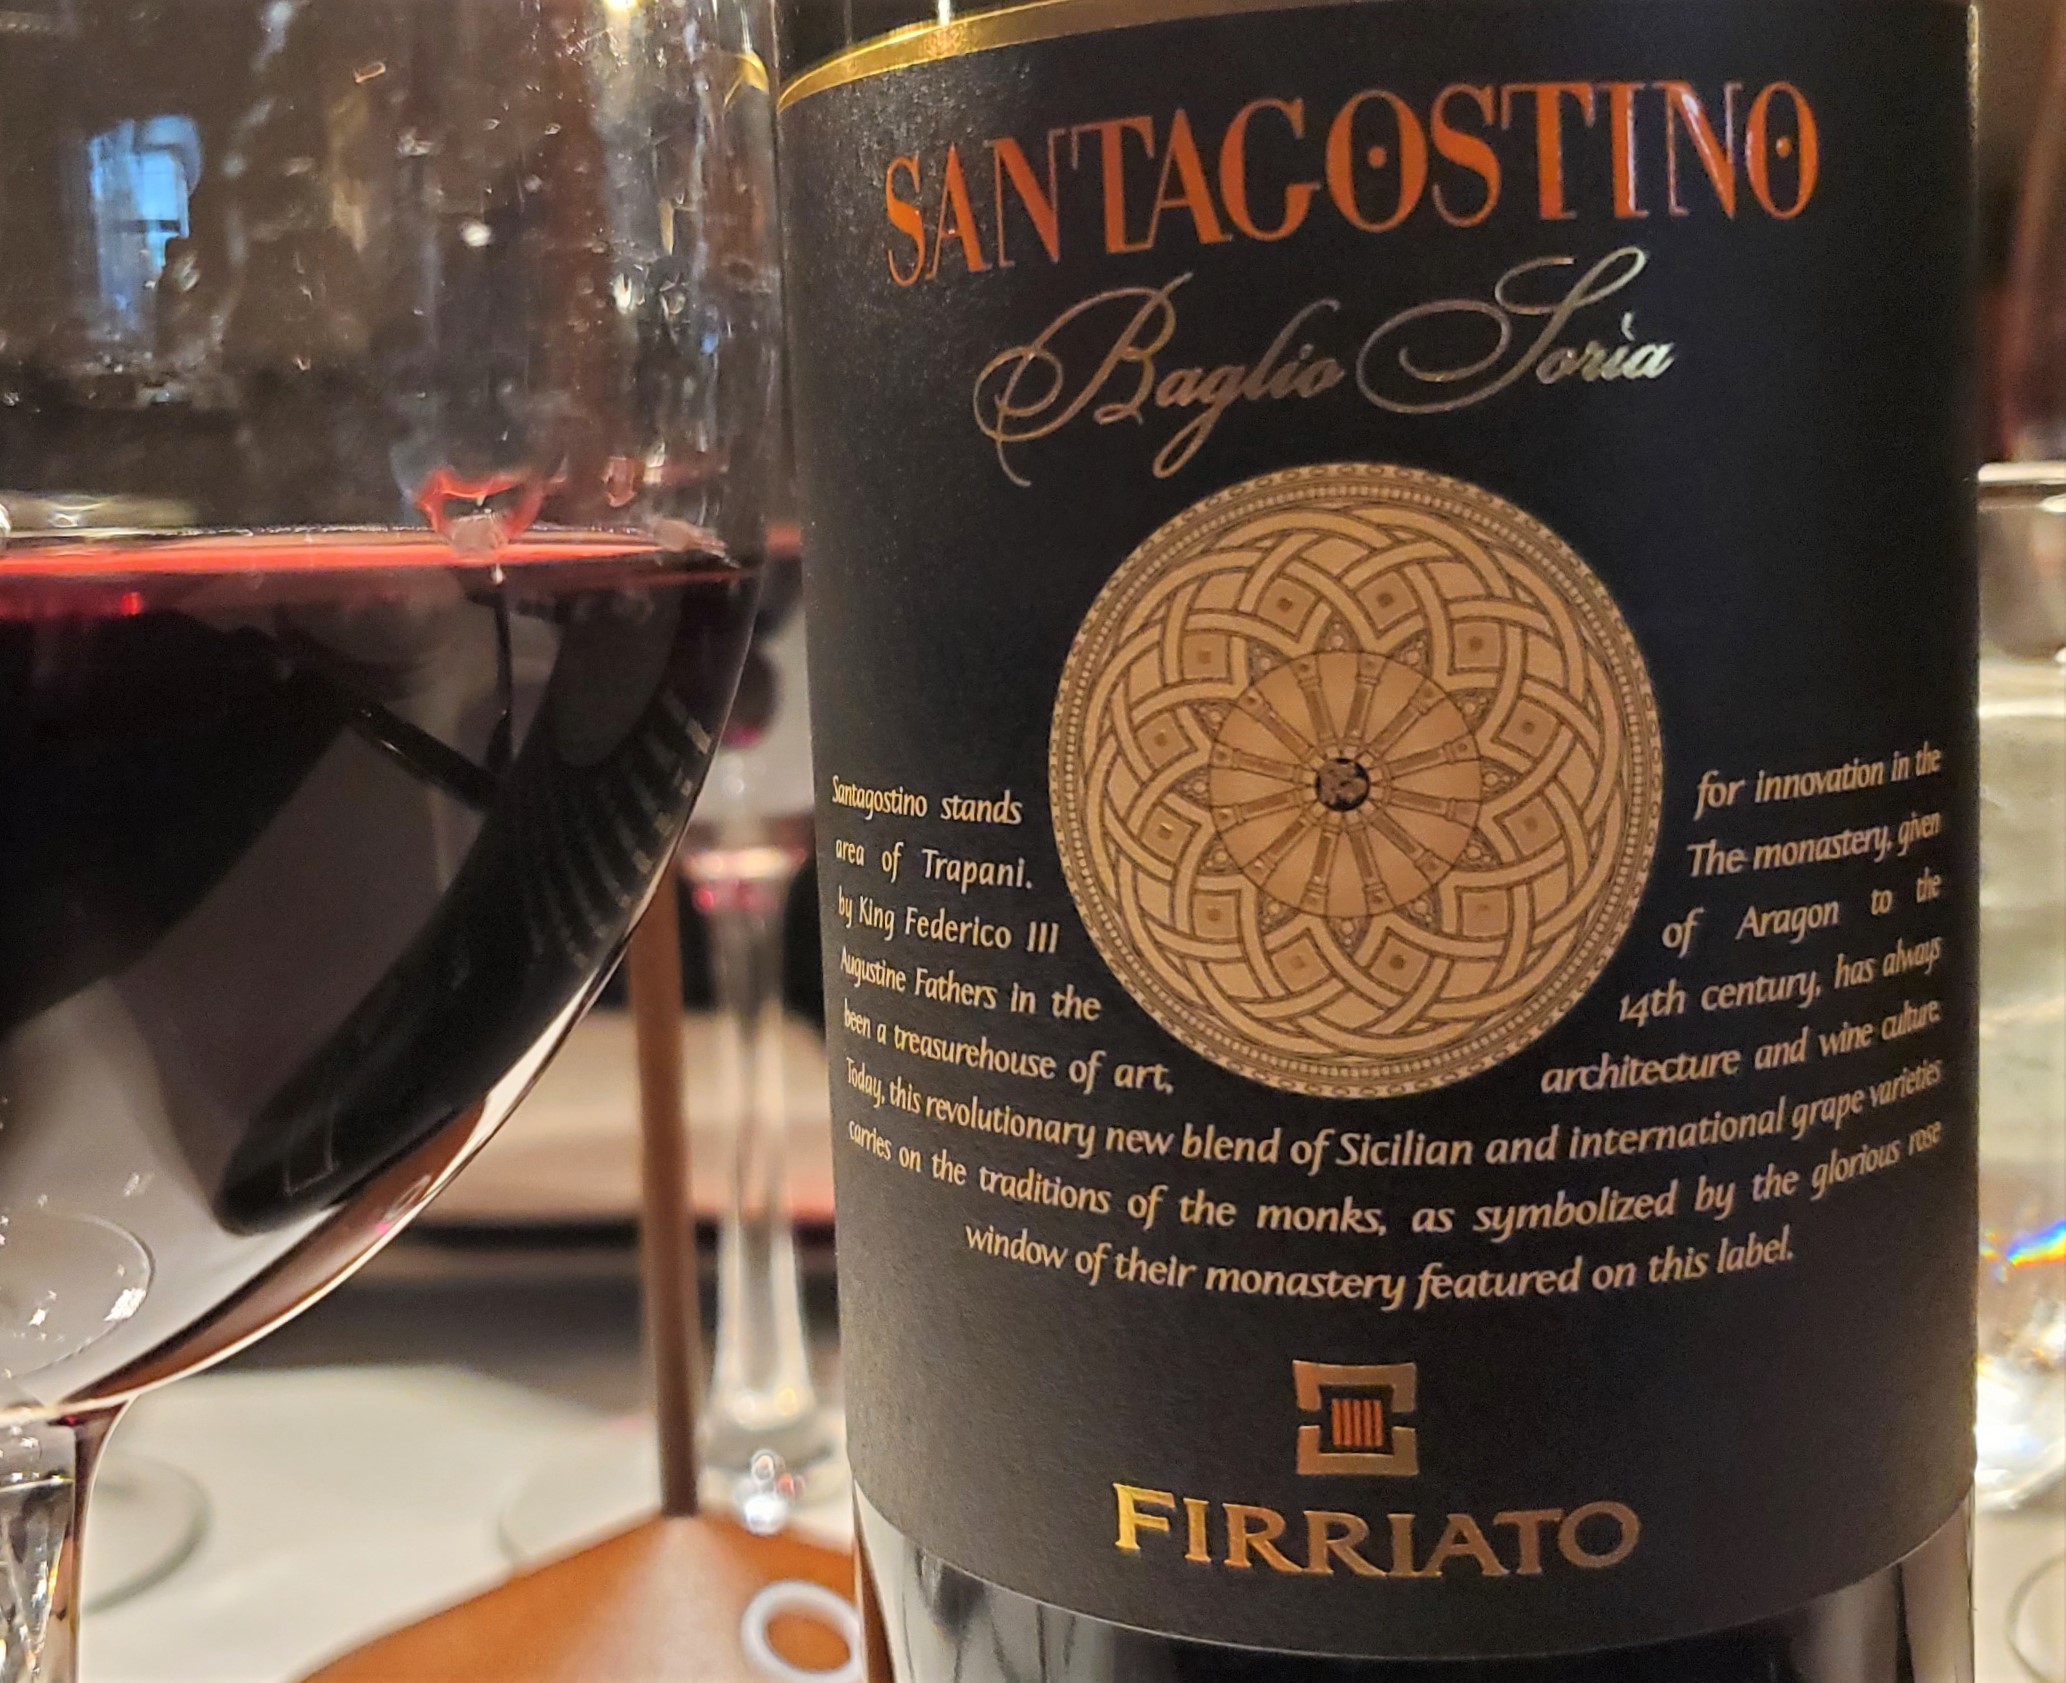 2019 "SantAgostino" Baglio Soria Rosso from the Firrito winery in Sicily